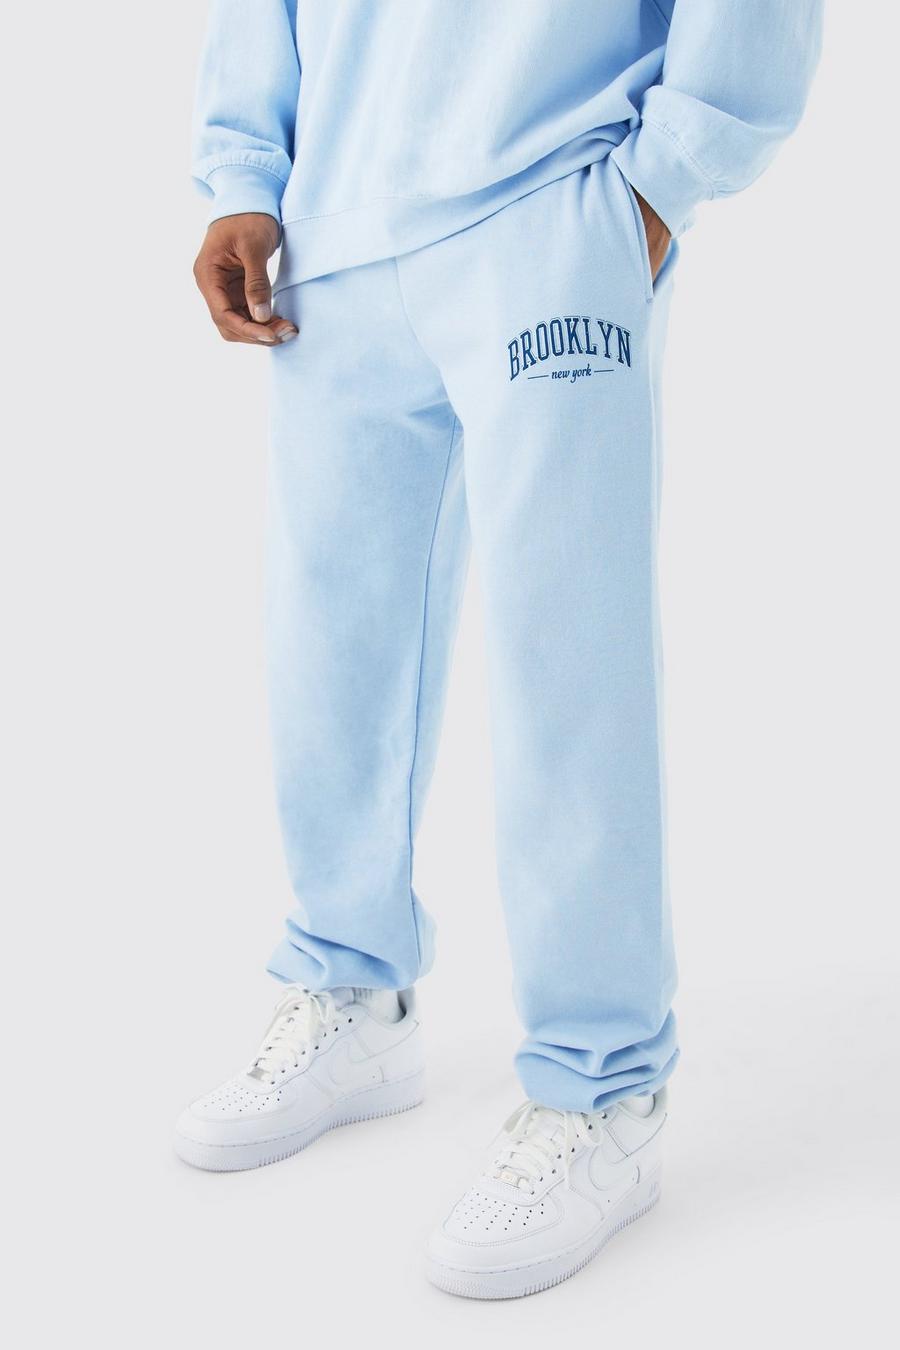 Pantalón deportivo oversize con estampado de Brooklyn NYC, Light blue